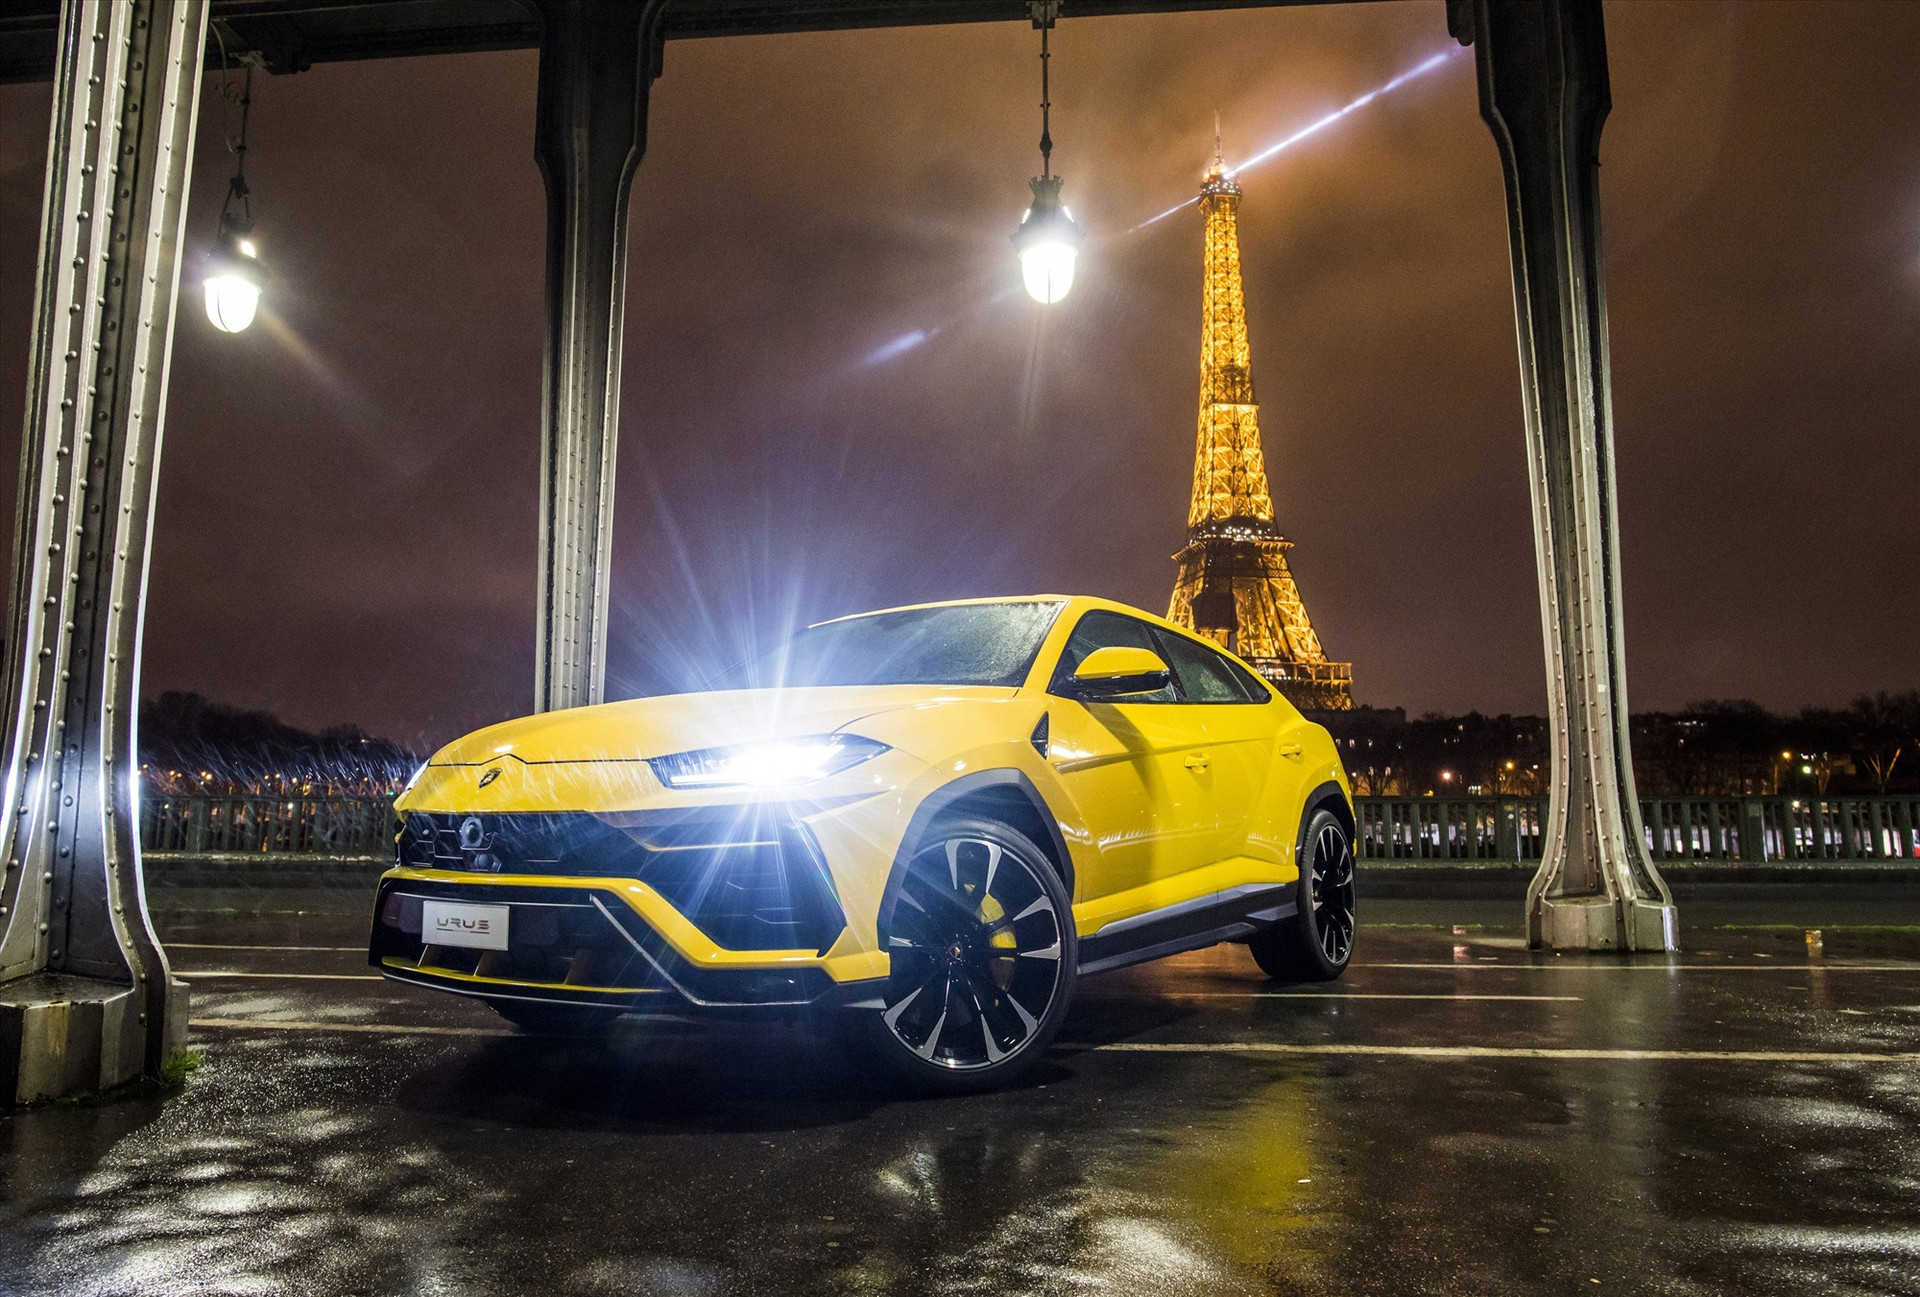 Doanh số của hãng Lamborghini tăng trưởng ấn tượng nhờ vào Urus - siêu xe SUV nhanh nhất thế giới. Ảnh: wheelsdev.com